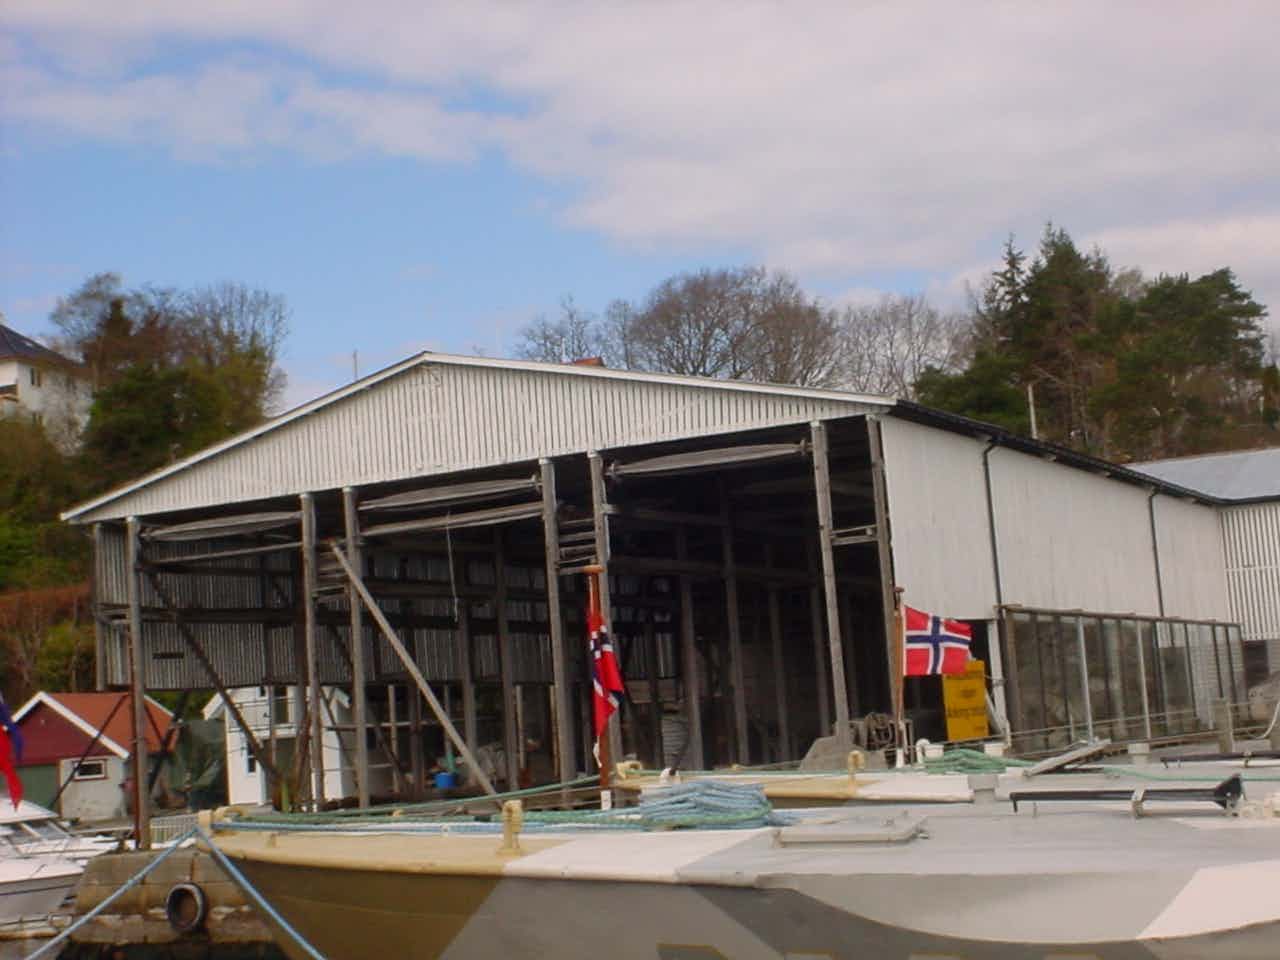 Historisk bygning ved sjø, båter, kai og hus.